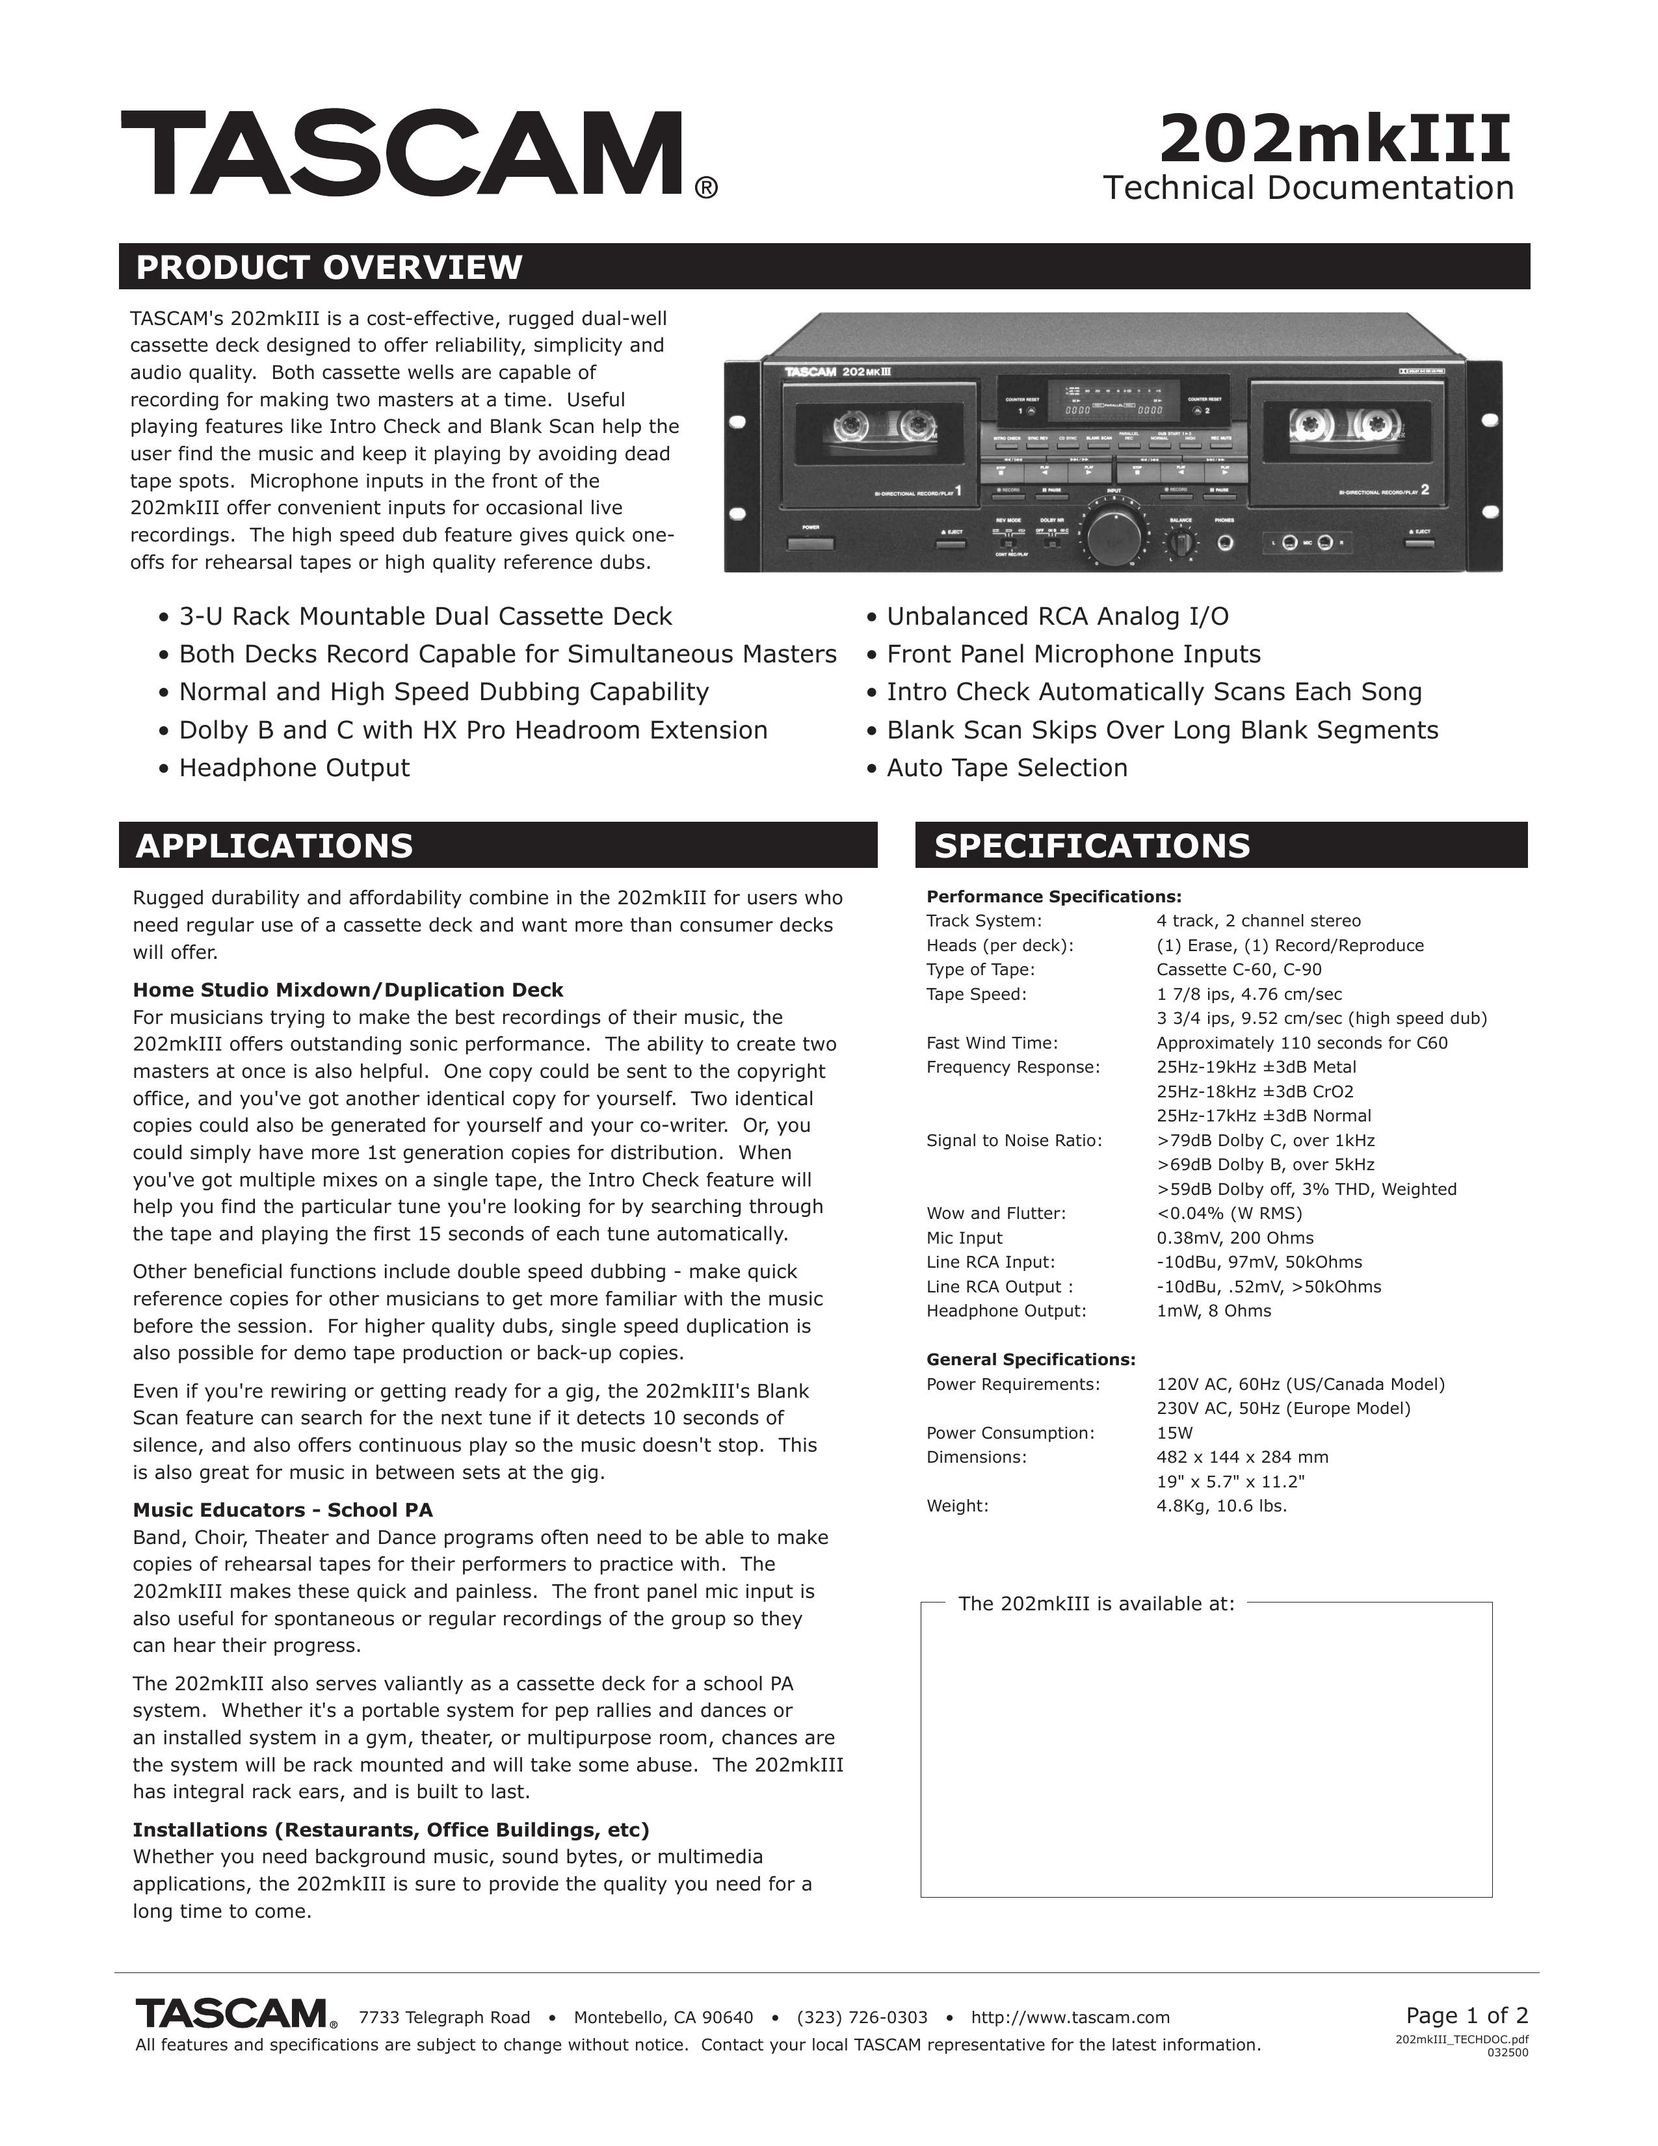 Tascam 202mkIII Cassette Player User Manual